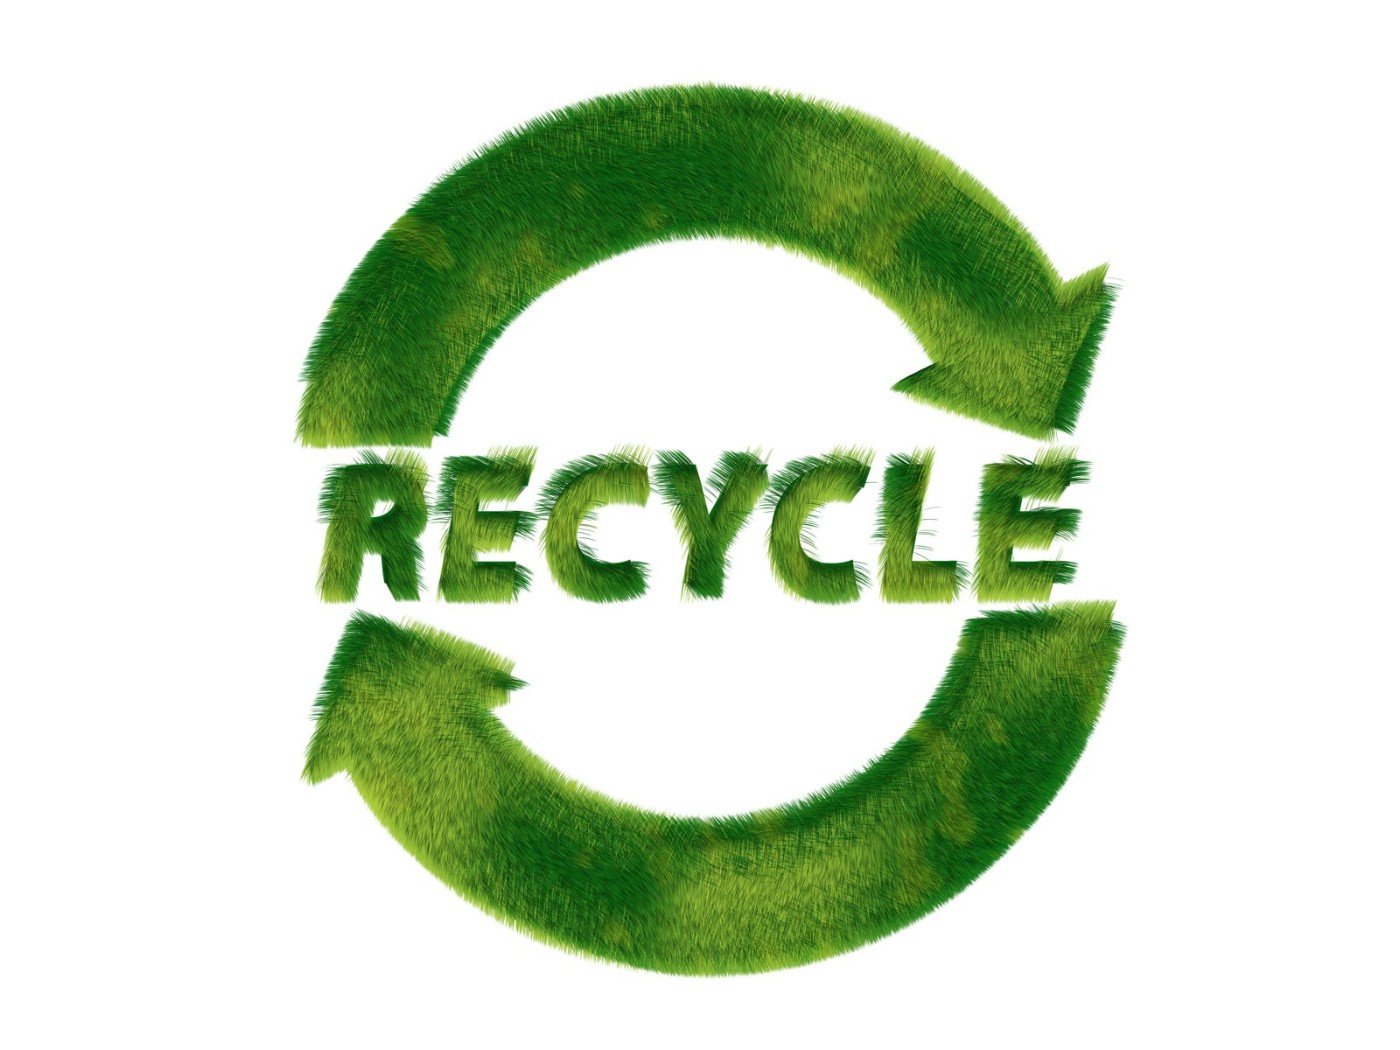 壁纸1400x1050 Recycle Sign Recycle Symbols 1920 1200壁纸 绿色和平环保标志-循环利用壁纸 绿色和平环保标志-循环利用图片 绿色和平环保标志-循环利用素材 插画壁纸 插画图库 插画图片素材桌面壁纸